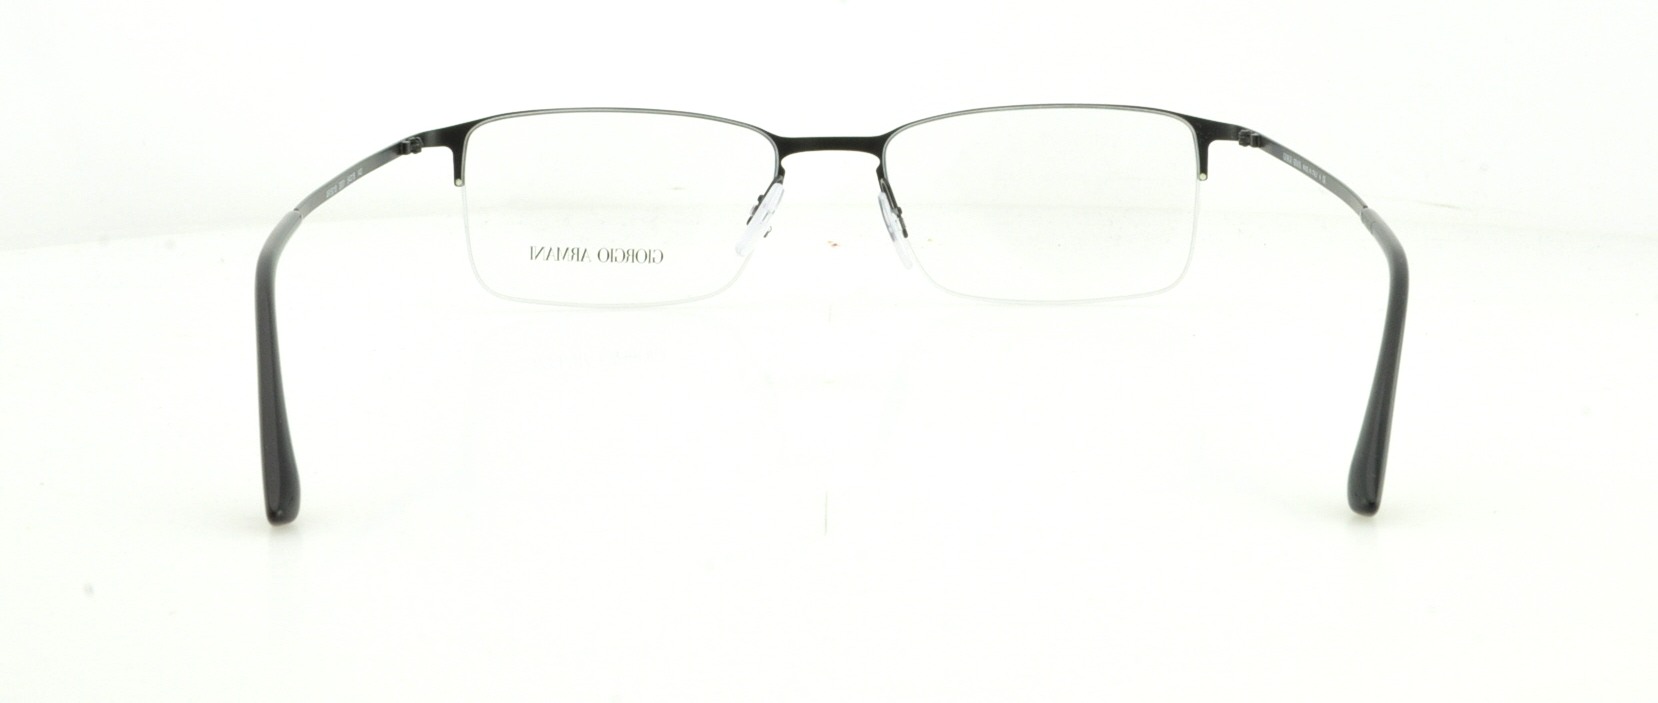 Designer Frames Outlet. Giorgio Armani Eyeglasses AR5010